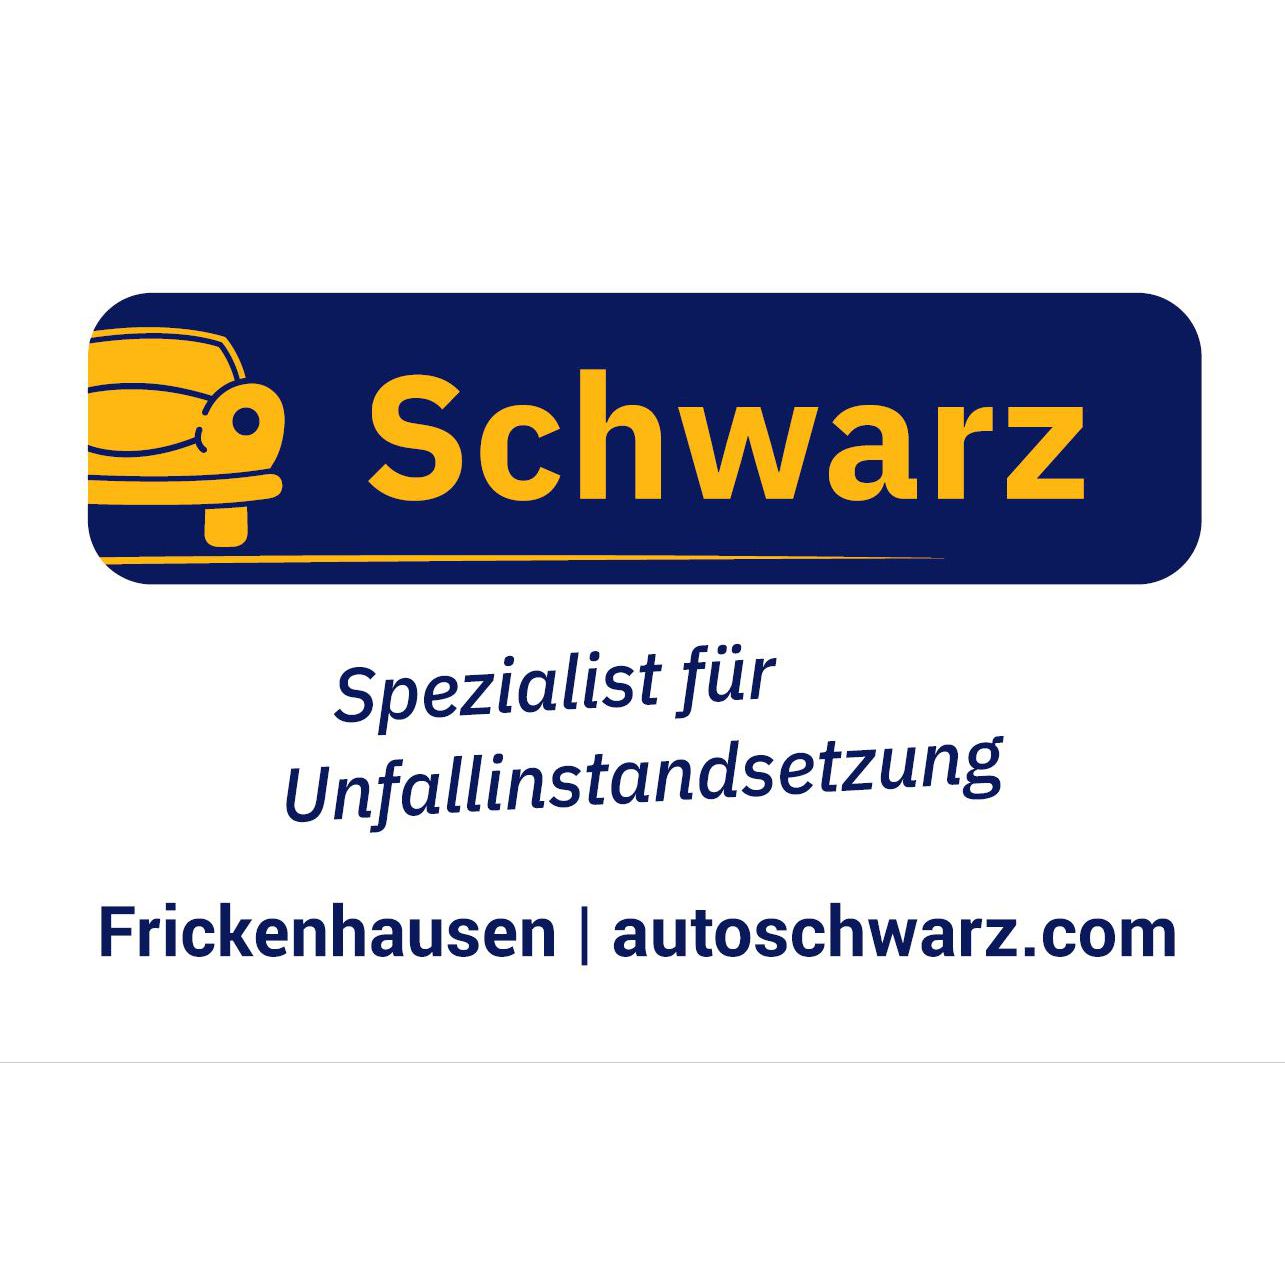 Auto Schwarz KG in Frickenhausen am Main - Logo